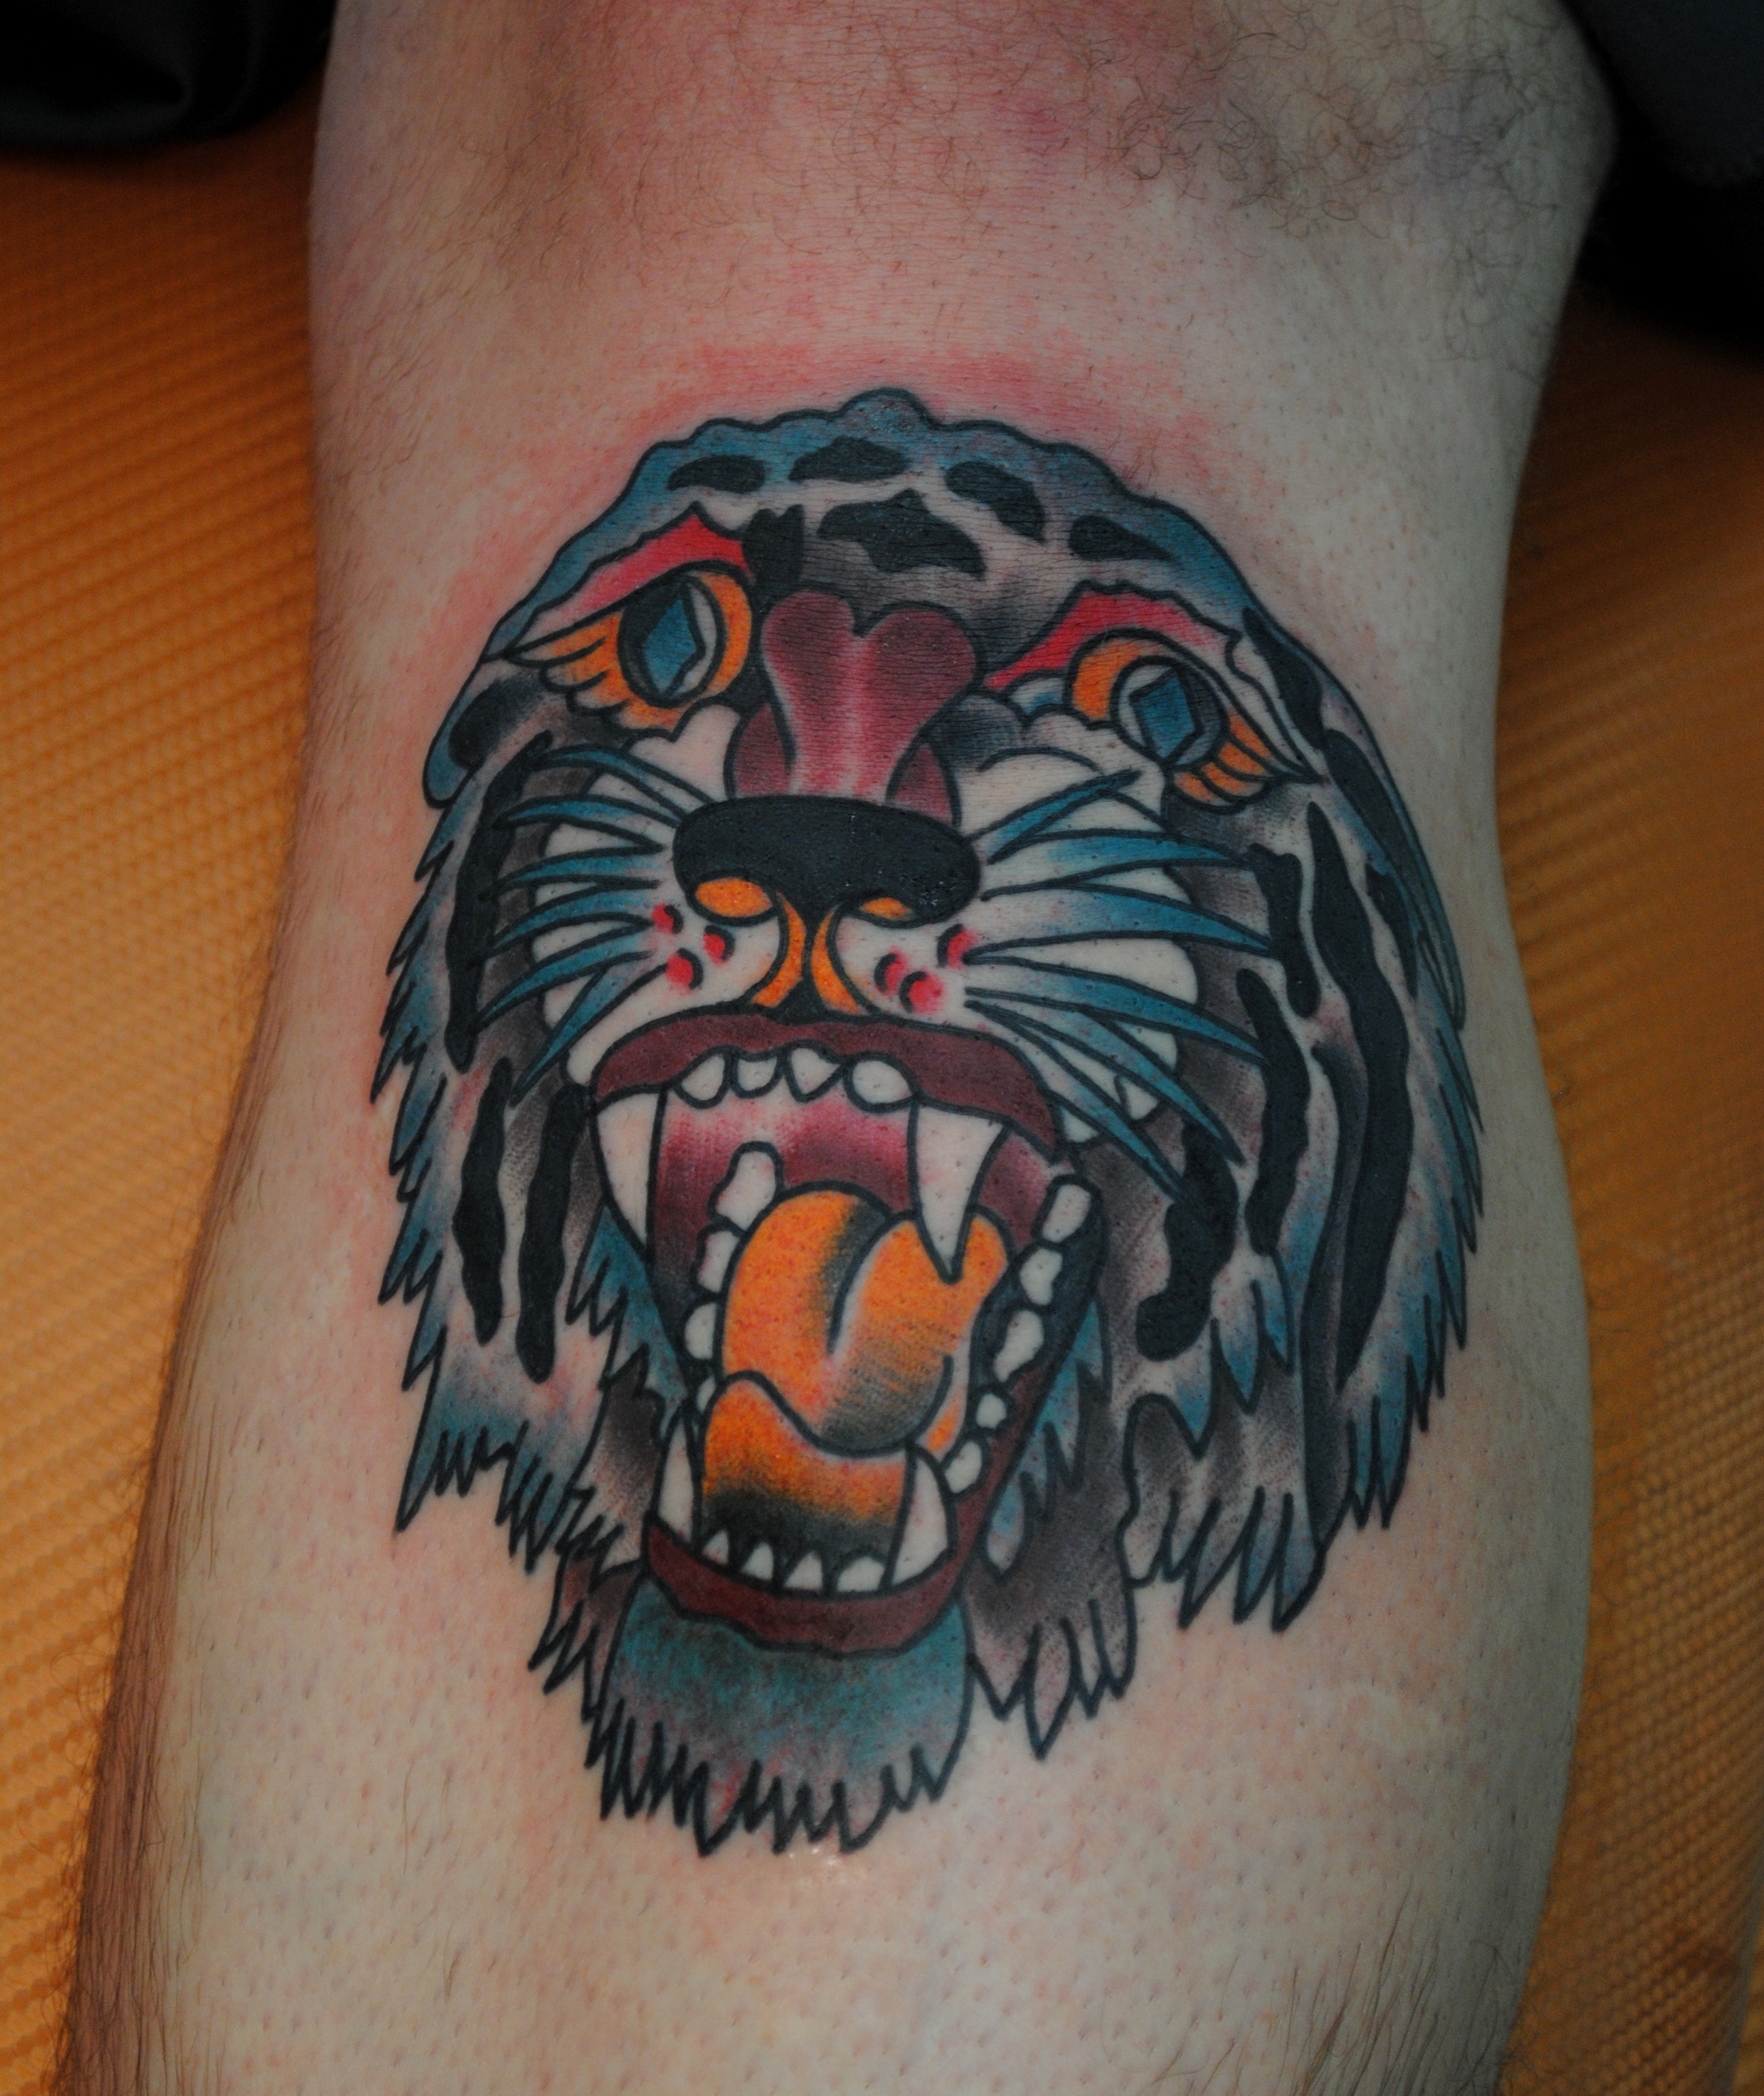 tigerl tattoo sleeve